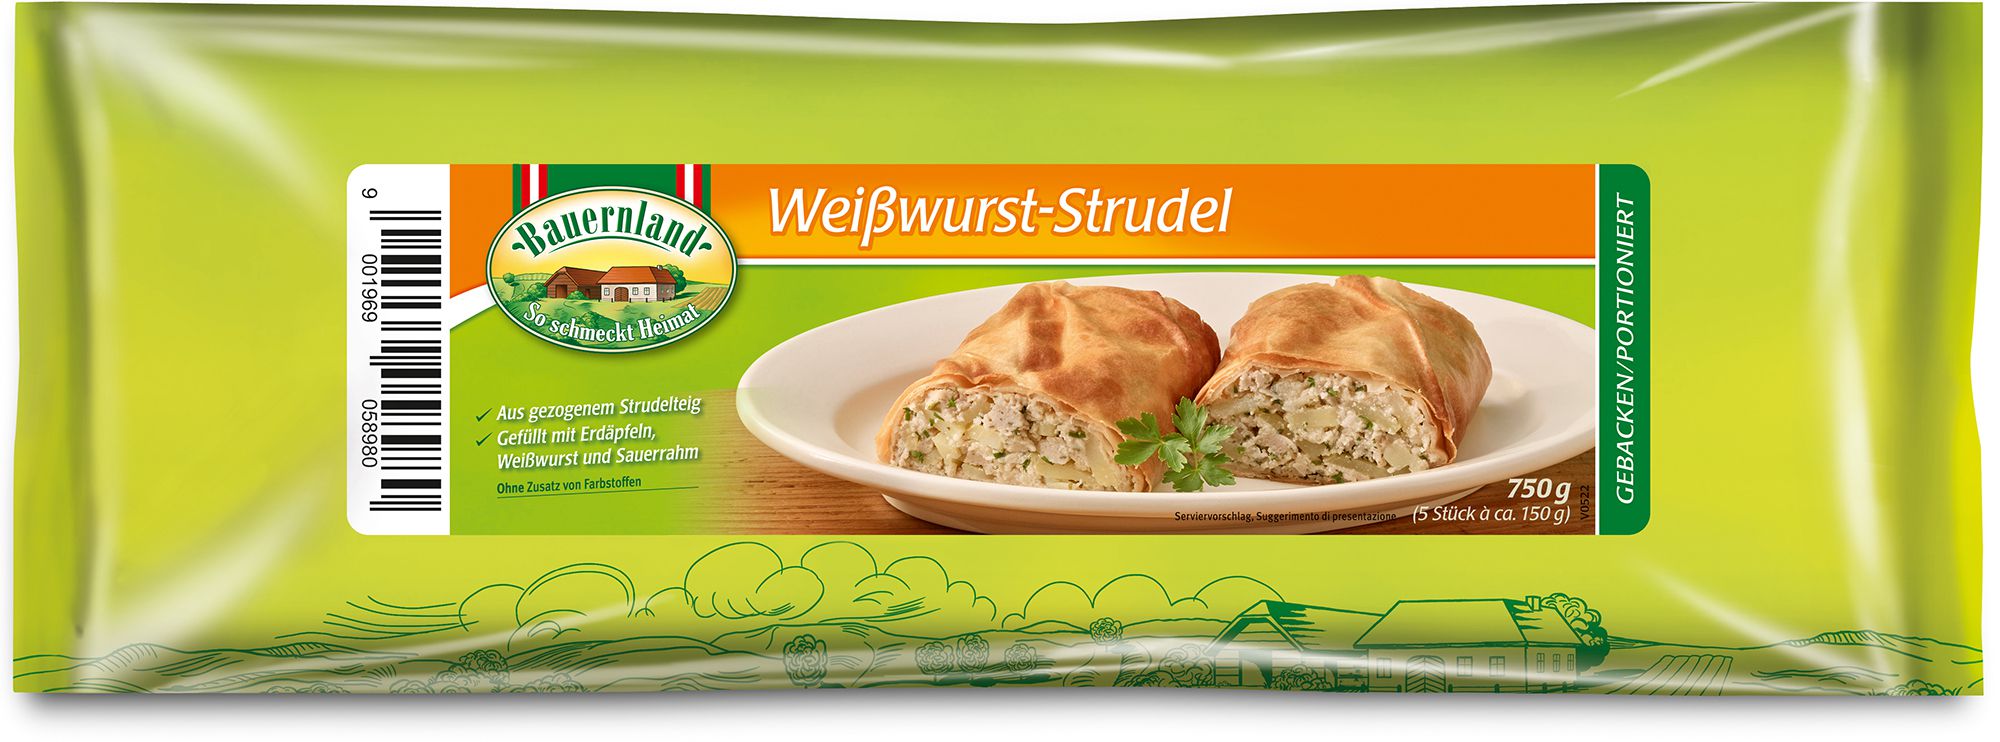 35898 Weißwurst-Strudel